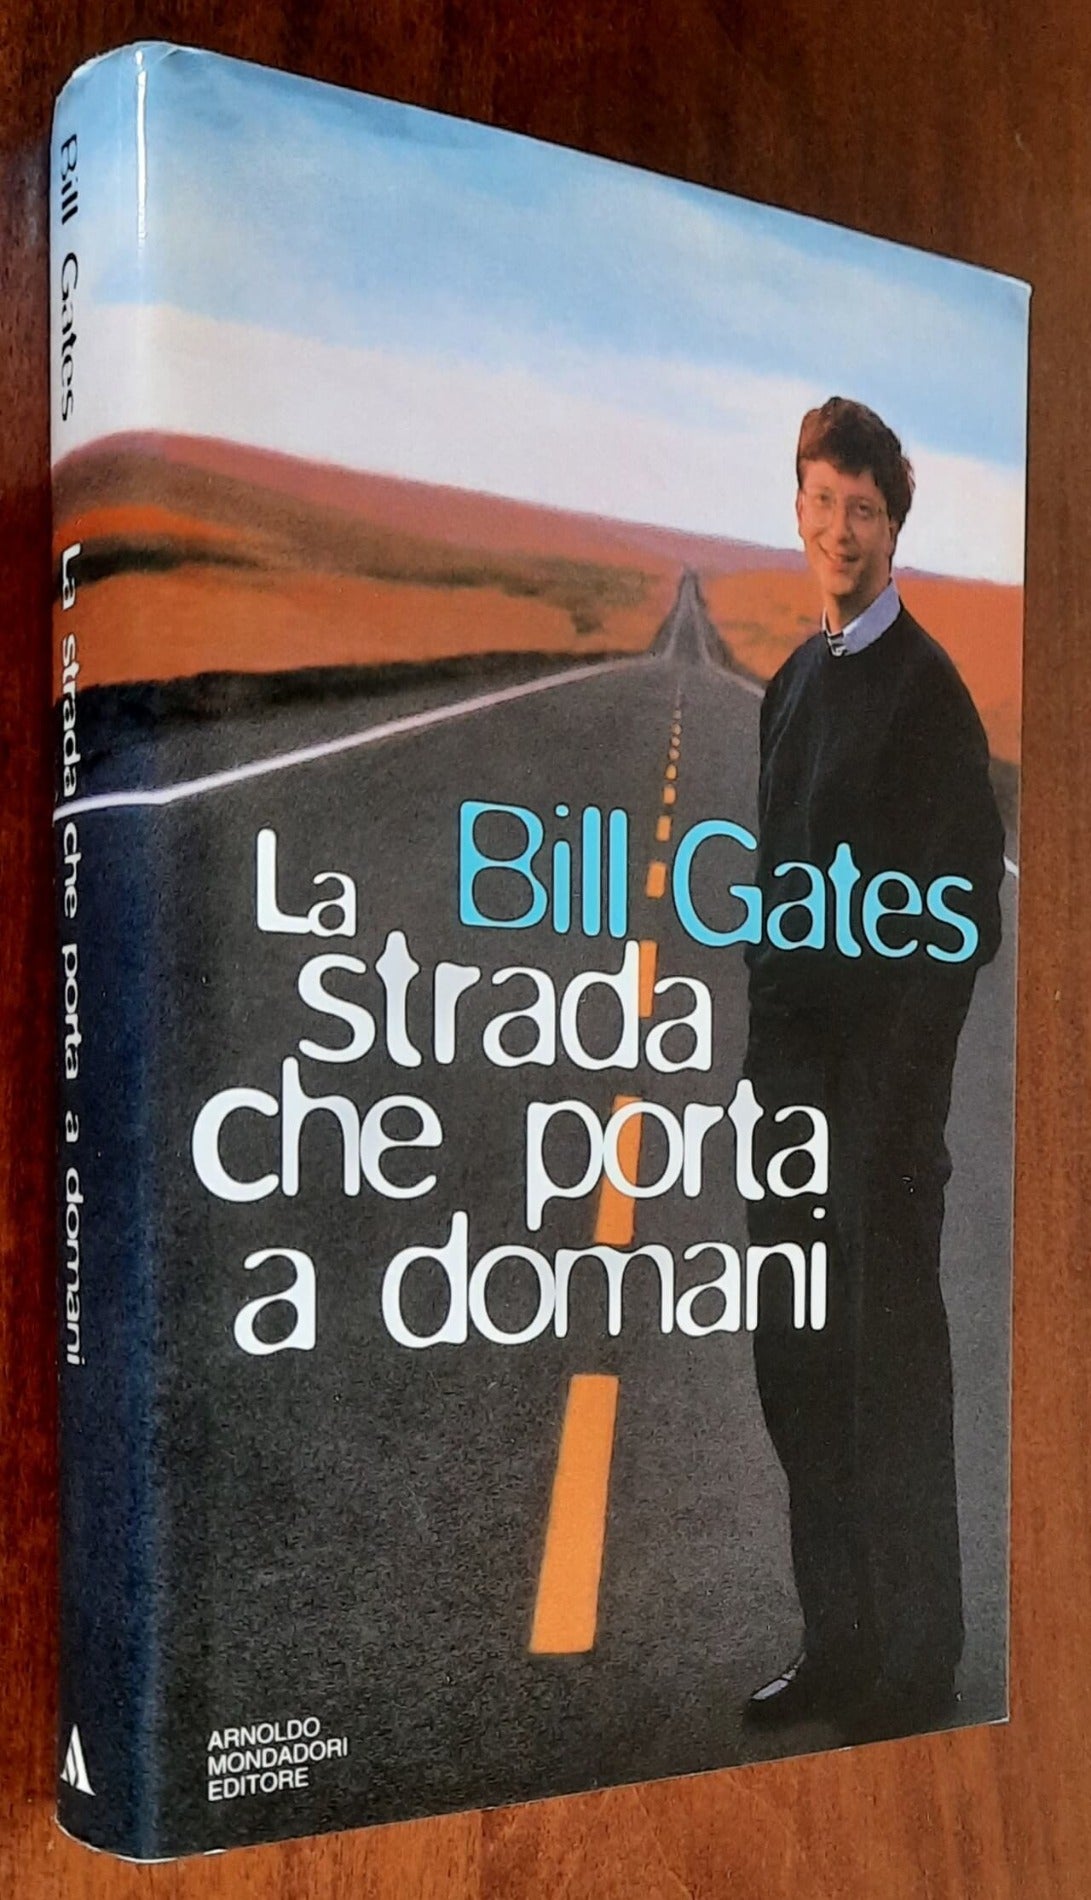 La strada che porta a domani - di Bill Gates